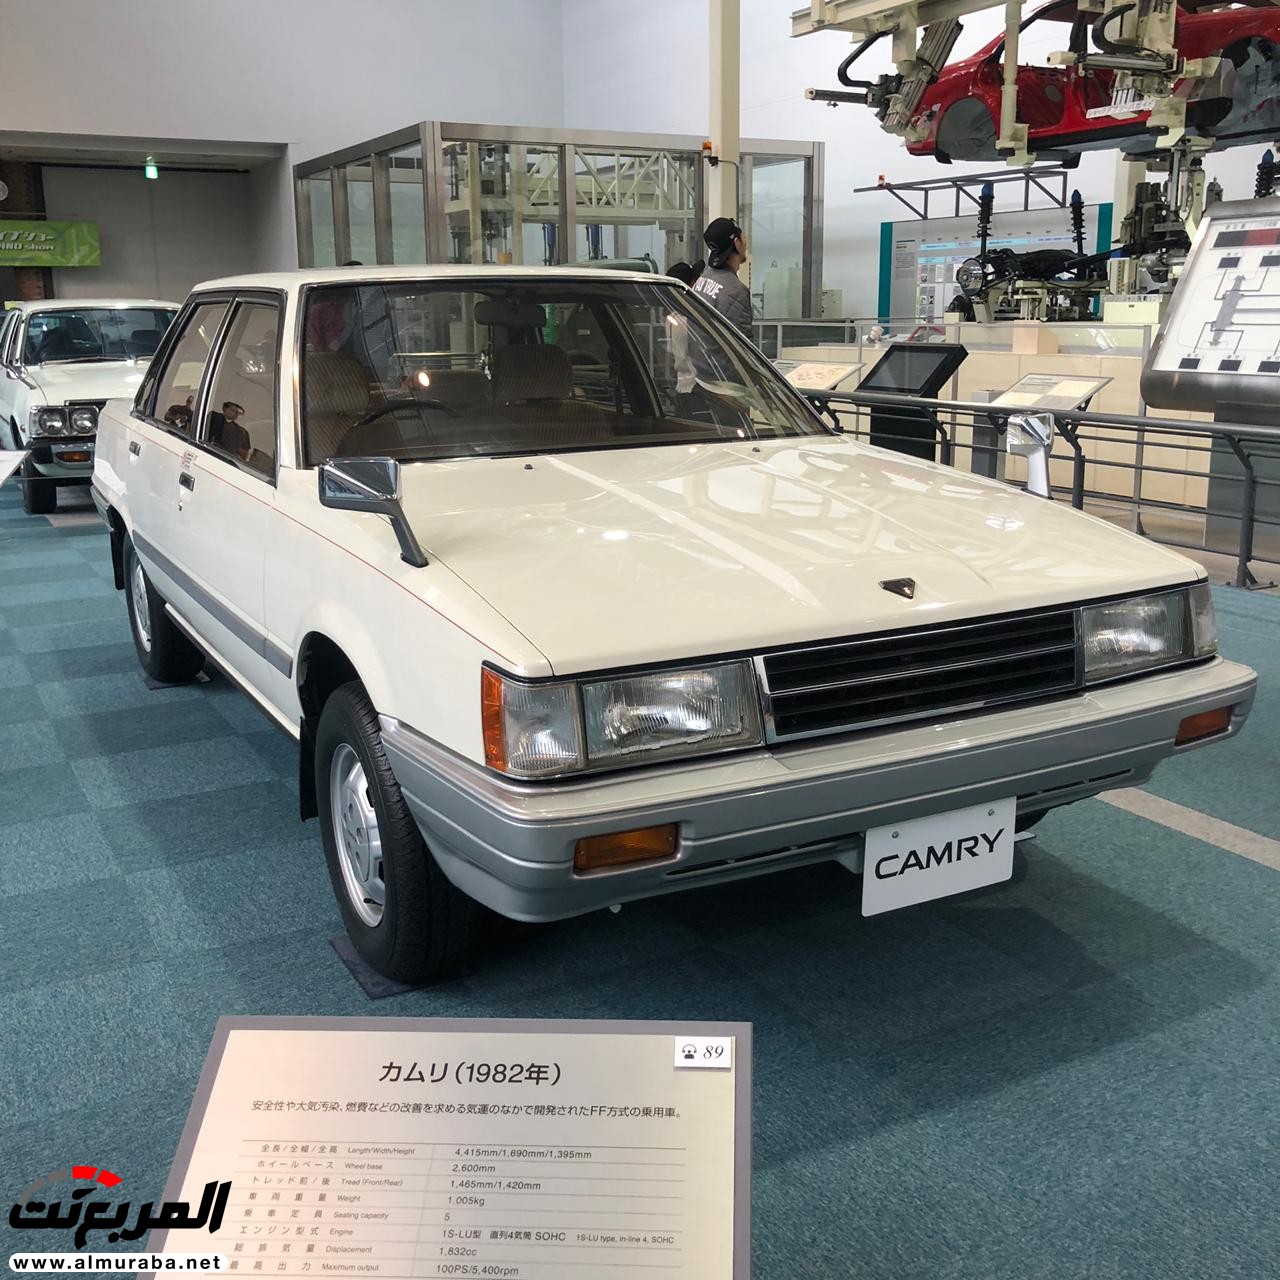 "بالصور" تعرف على تاريخ تويوتا وكيف بدأت أكبر صانعة سيارات يابانية 31